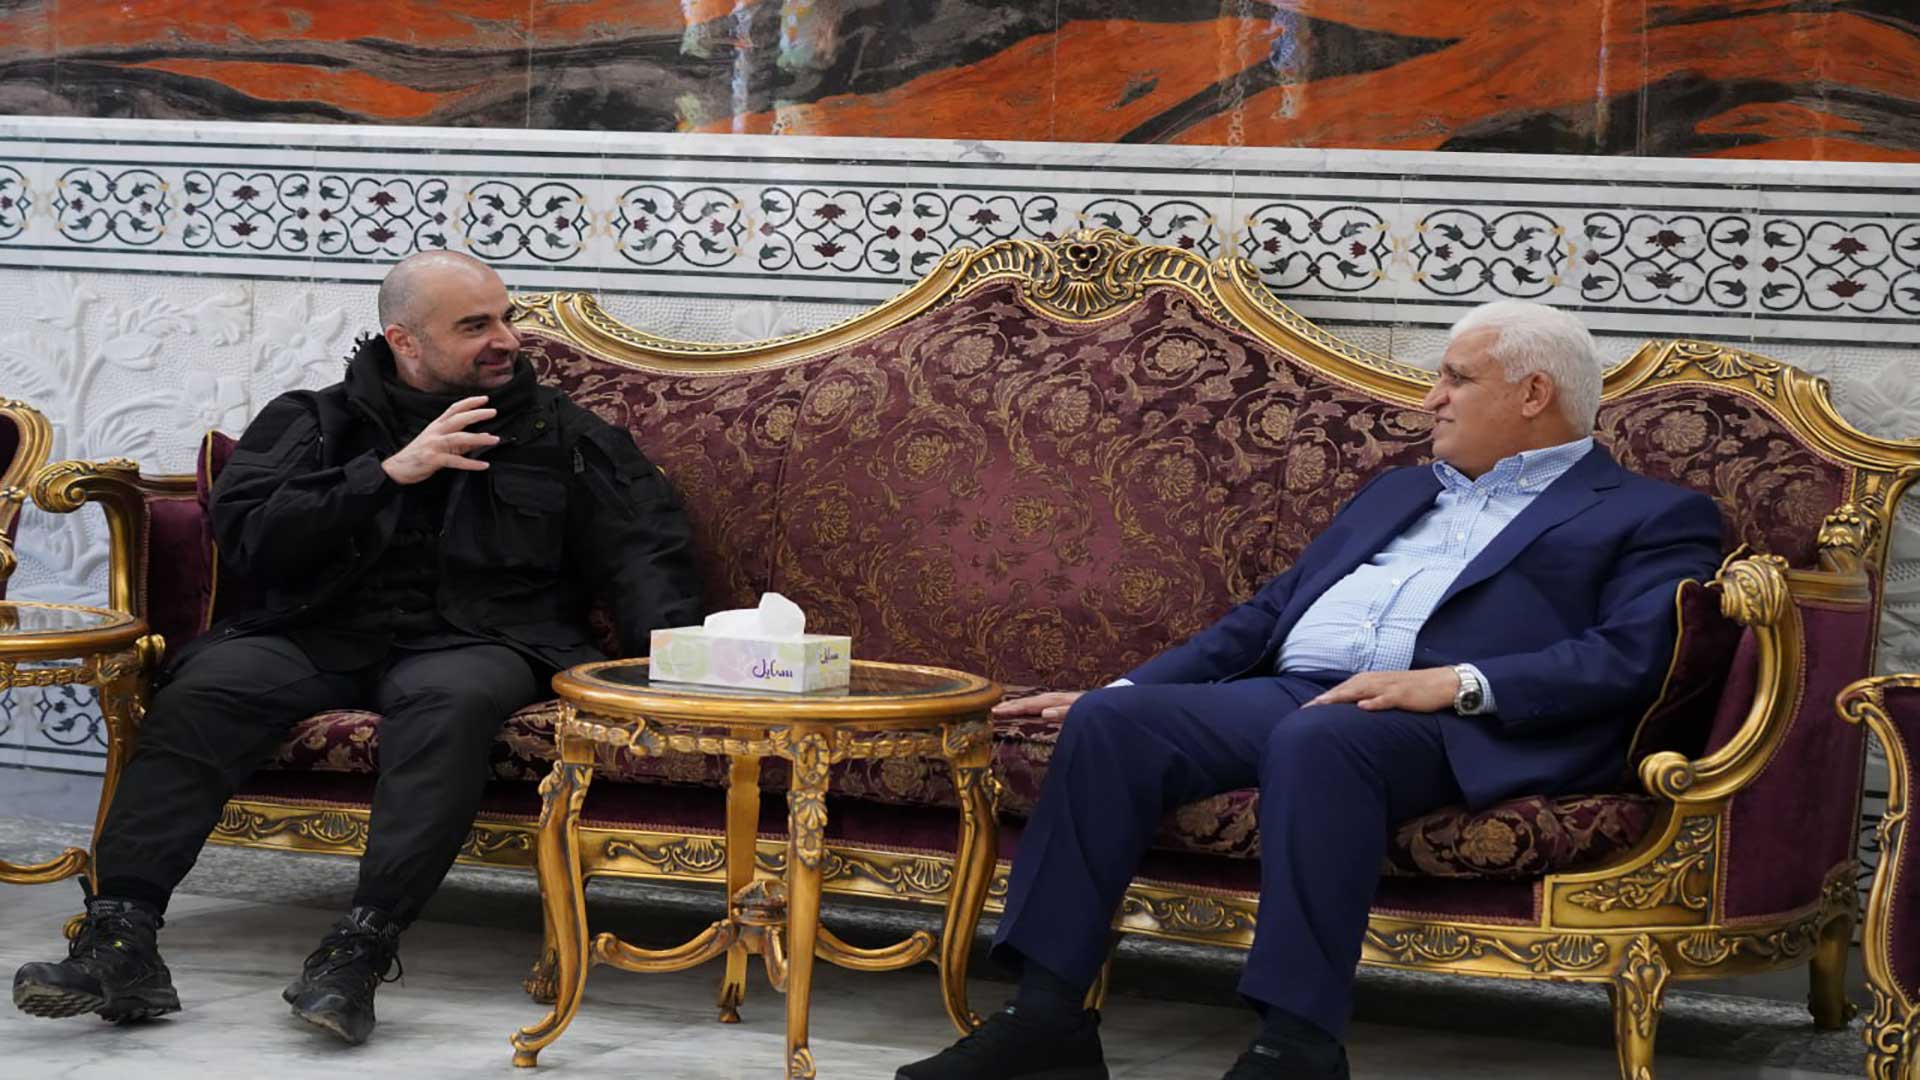 الرئيس بافل جلال طالباني يجتمع مع السيد فالح الفياض 